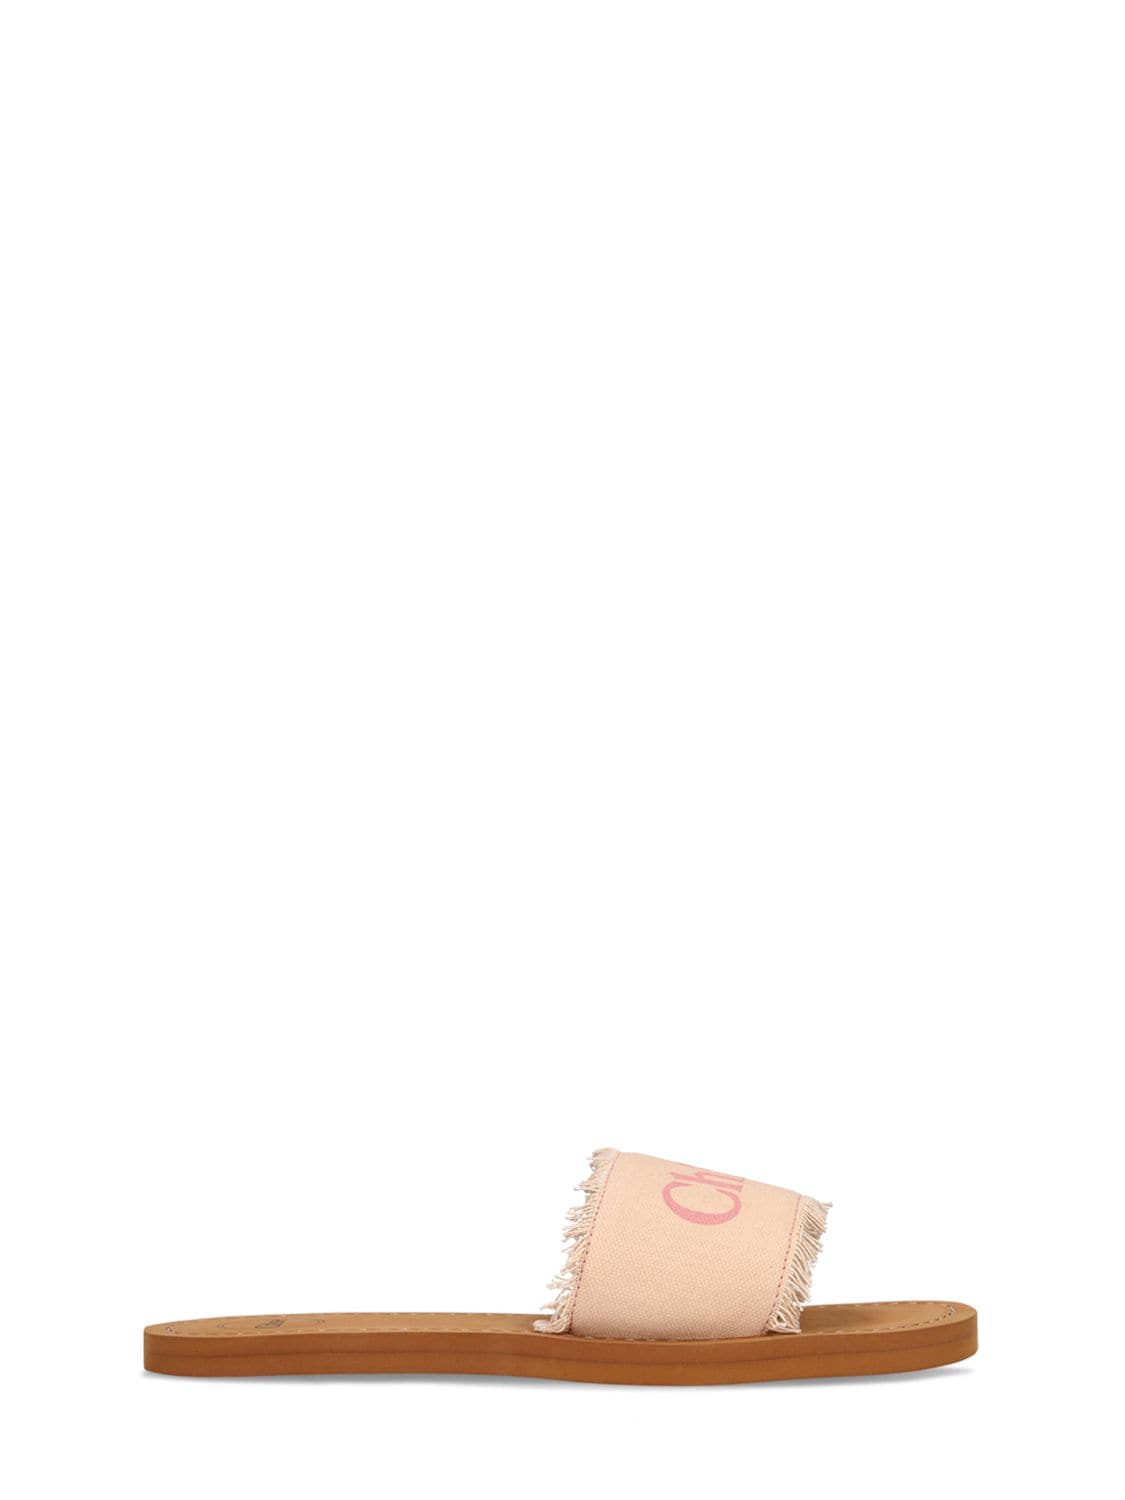 Chloé Kids' Logo Print Slide Sandals W/ Fringes In Pink